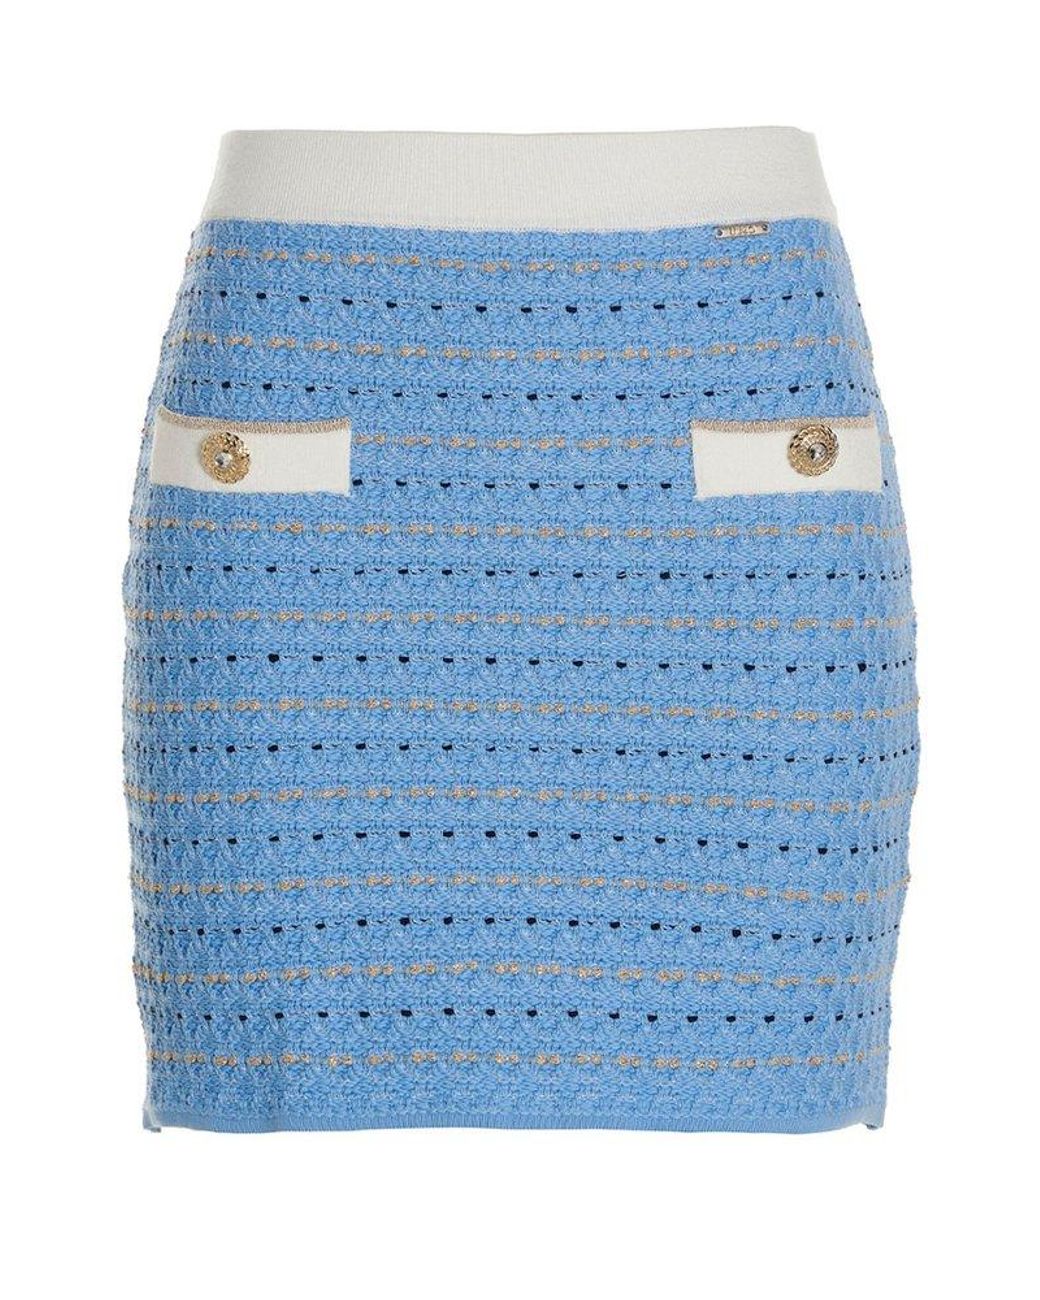 Liu Jo Jacquard Knitted Mini Skirt in Blue | Lyst